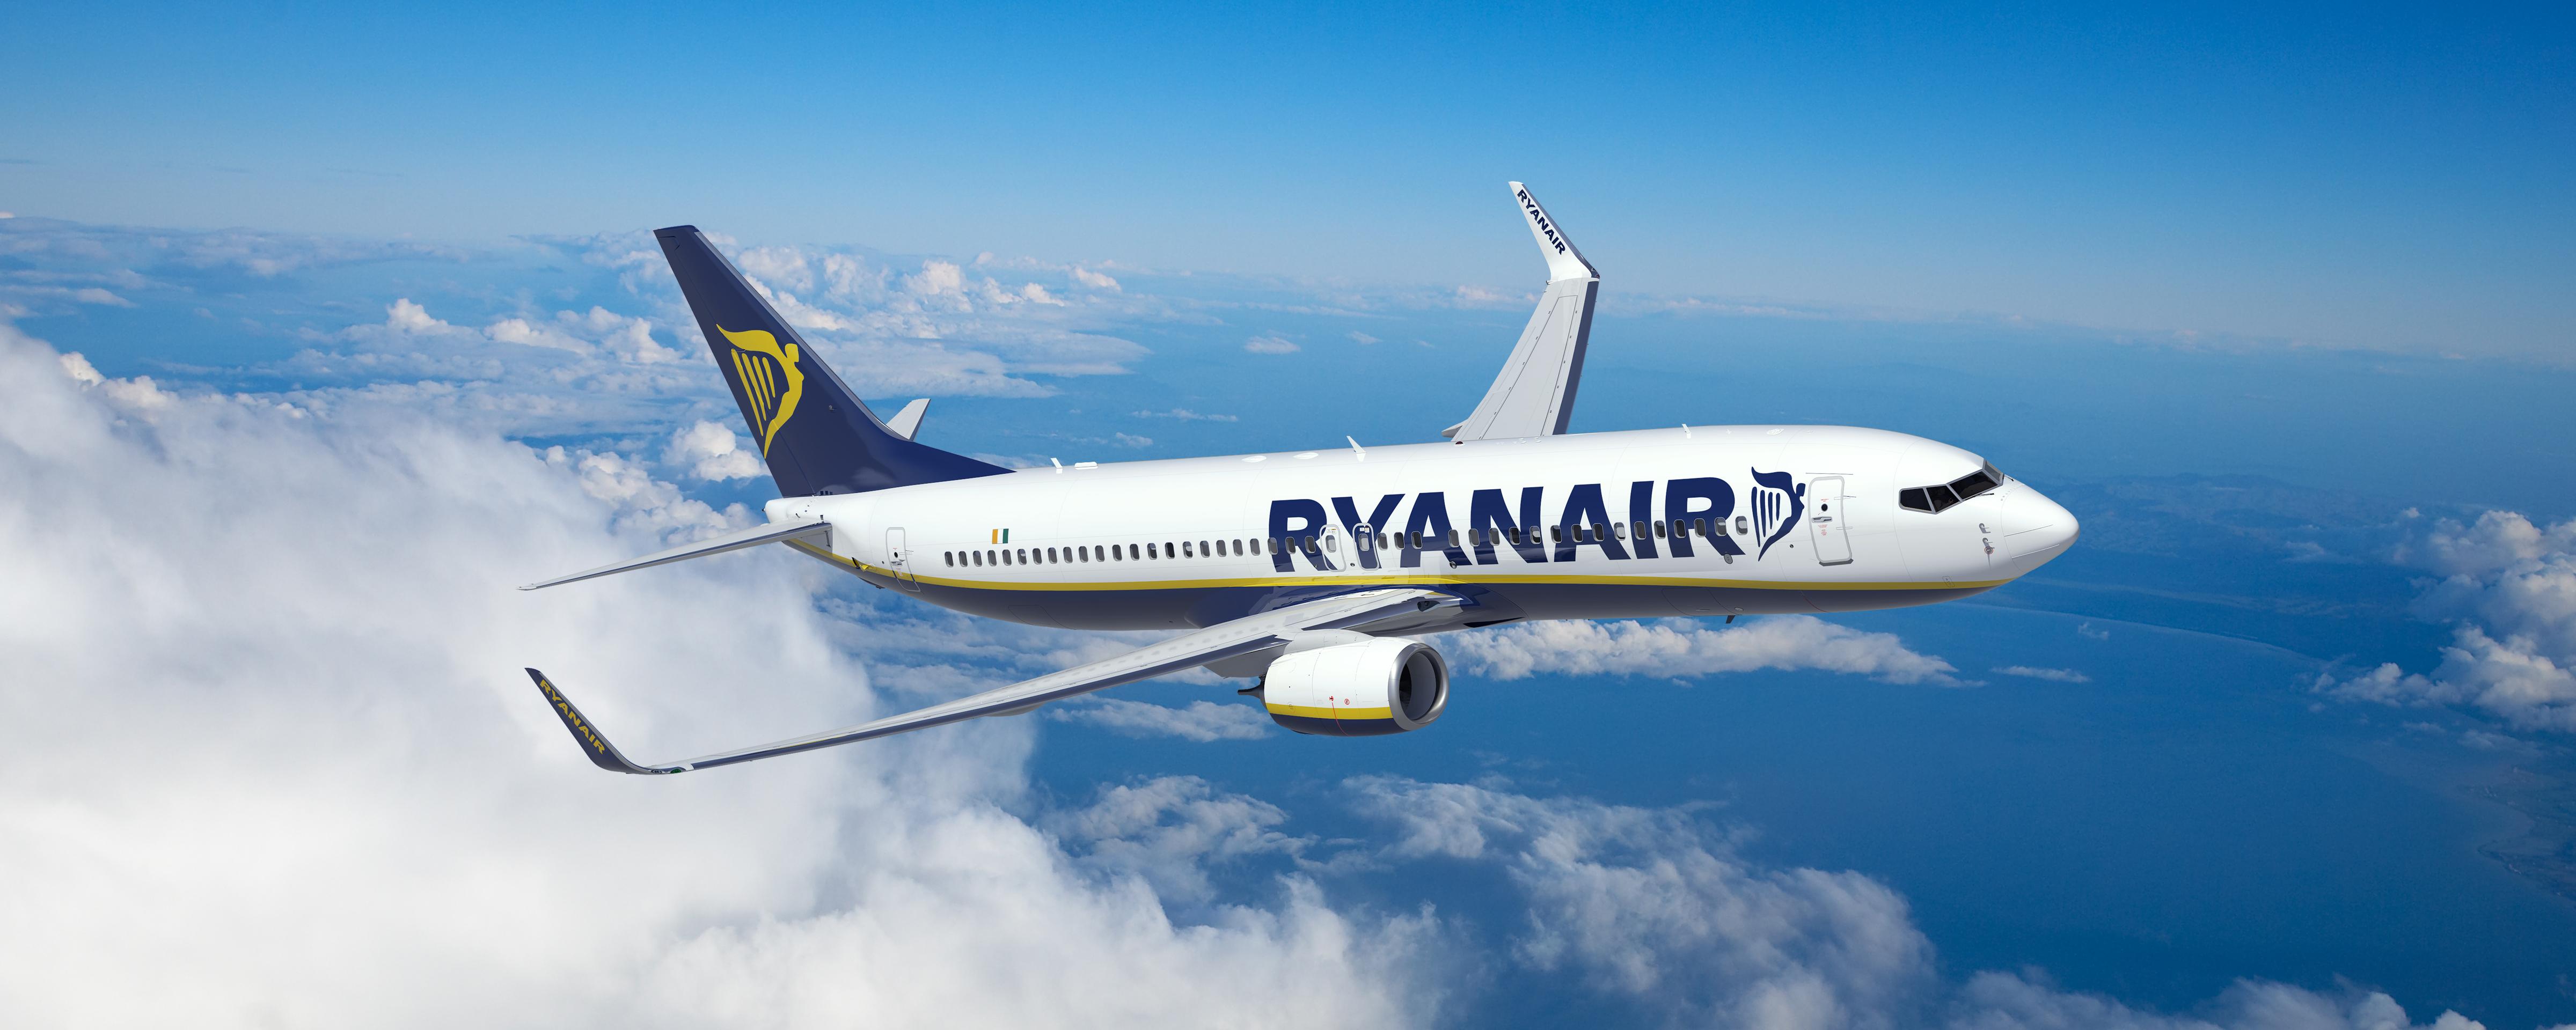 El 92% De Los Clientes De Ryanair Están Satisfechos Con La Experiencia De Vuelo